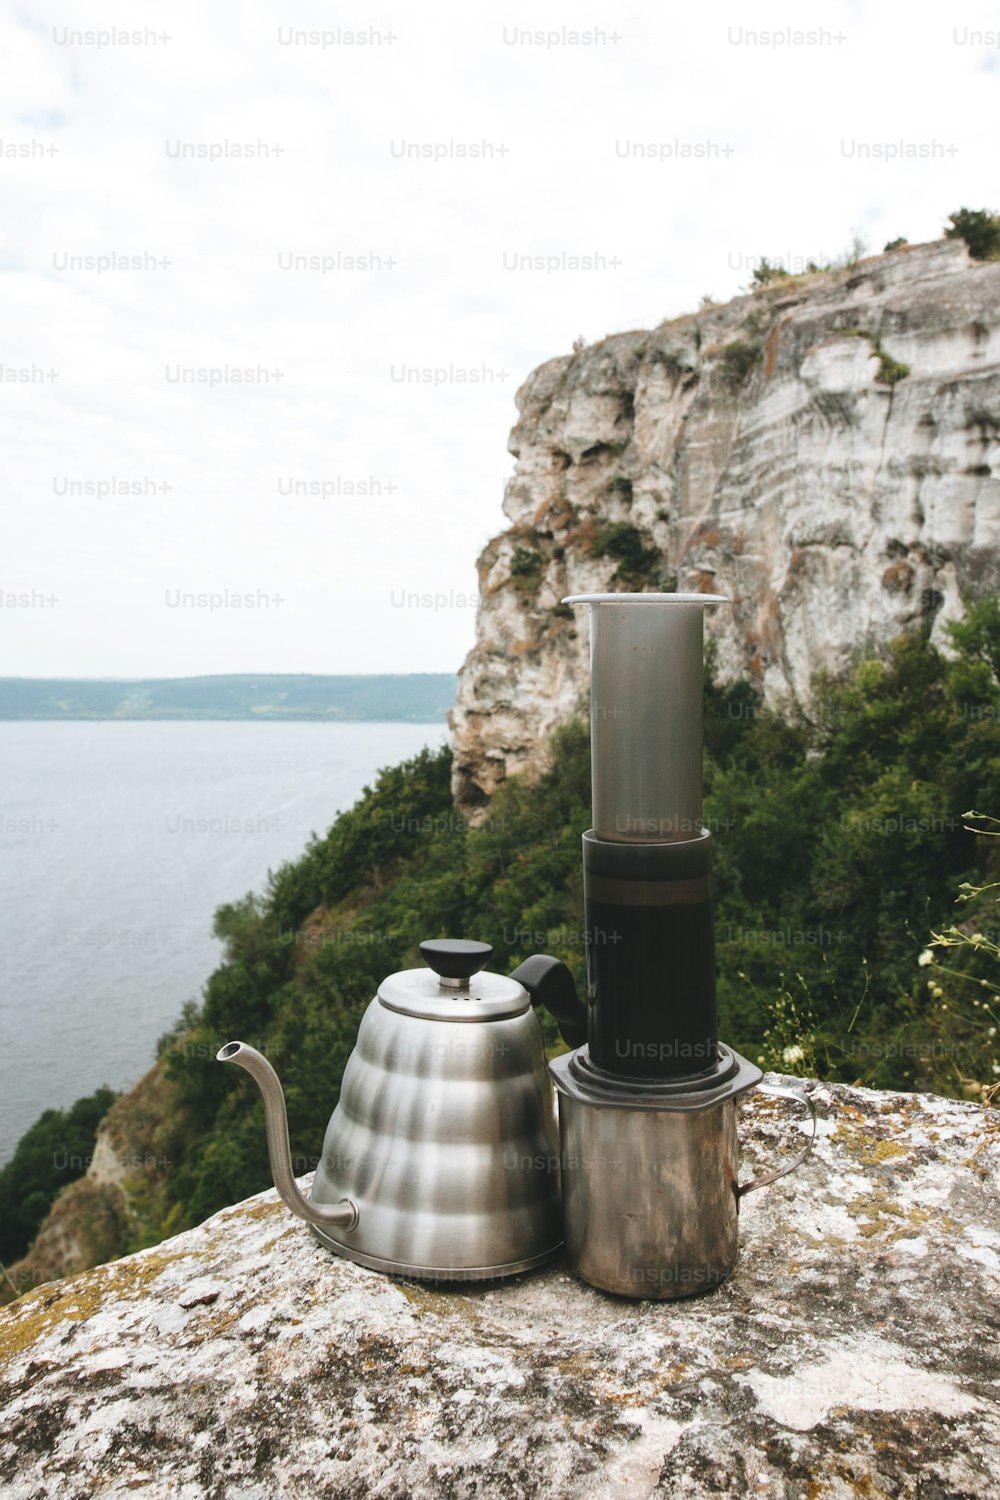 Stahlkessel und Aeropress auf Metallbecher auf Klippe am See, Brühen alternativer Kaffee auf Campingplatz. Heißes Getränk beim Picknick im Freien. Trekking und Wandern in den Bergen